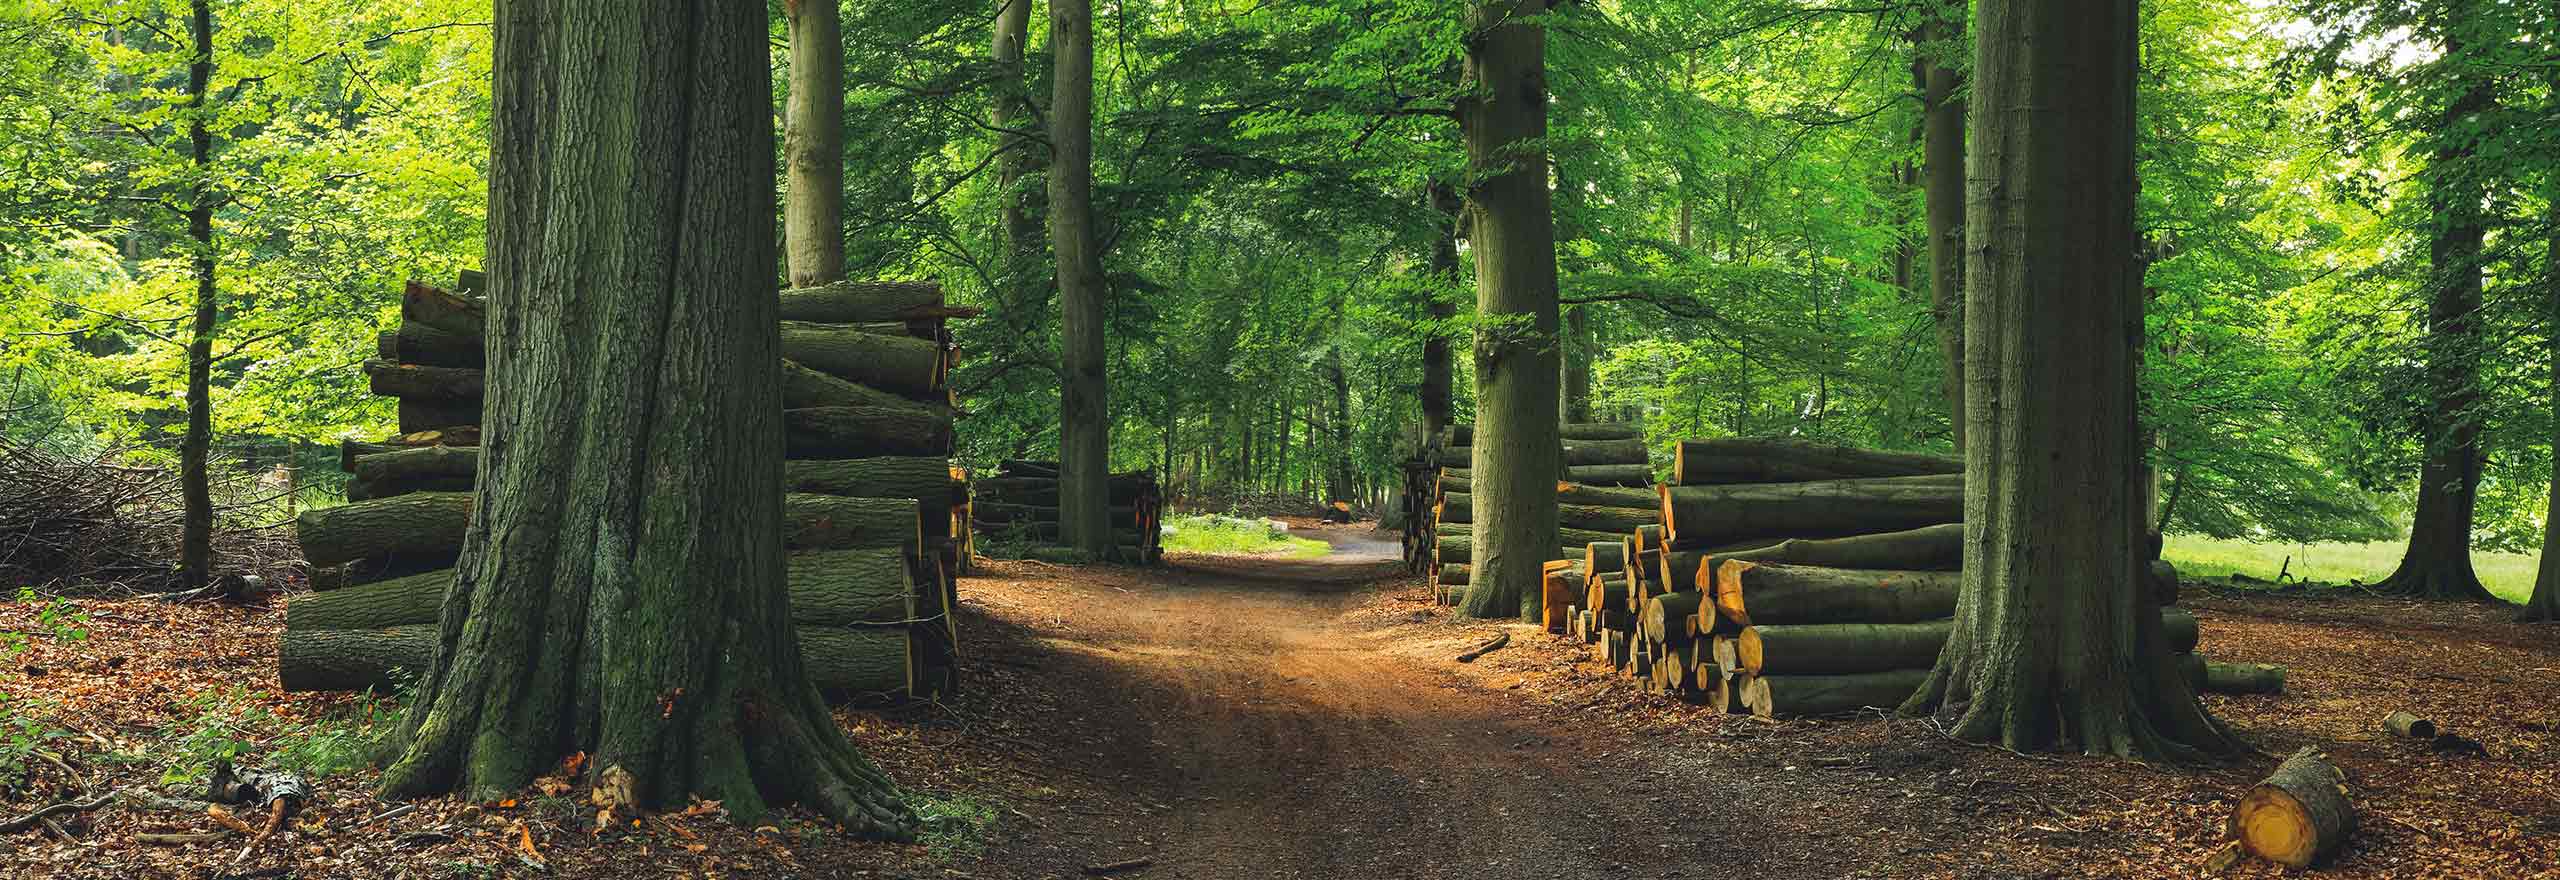 Floresta verde com árvores cortadas e pilhas de madeira 